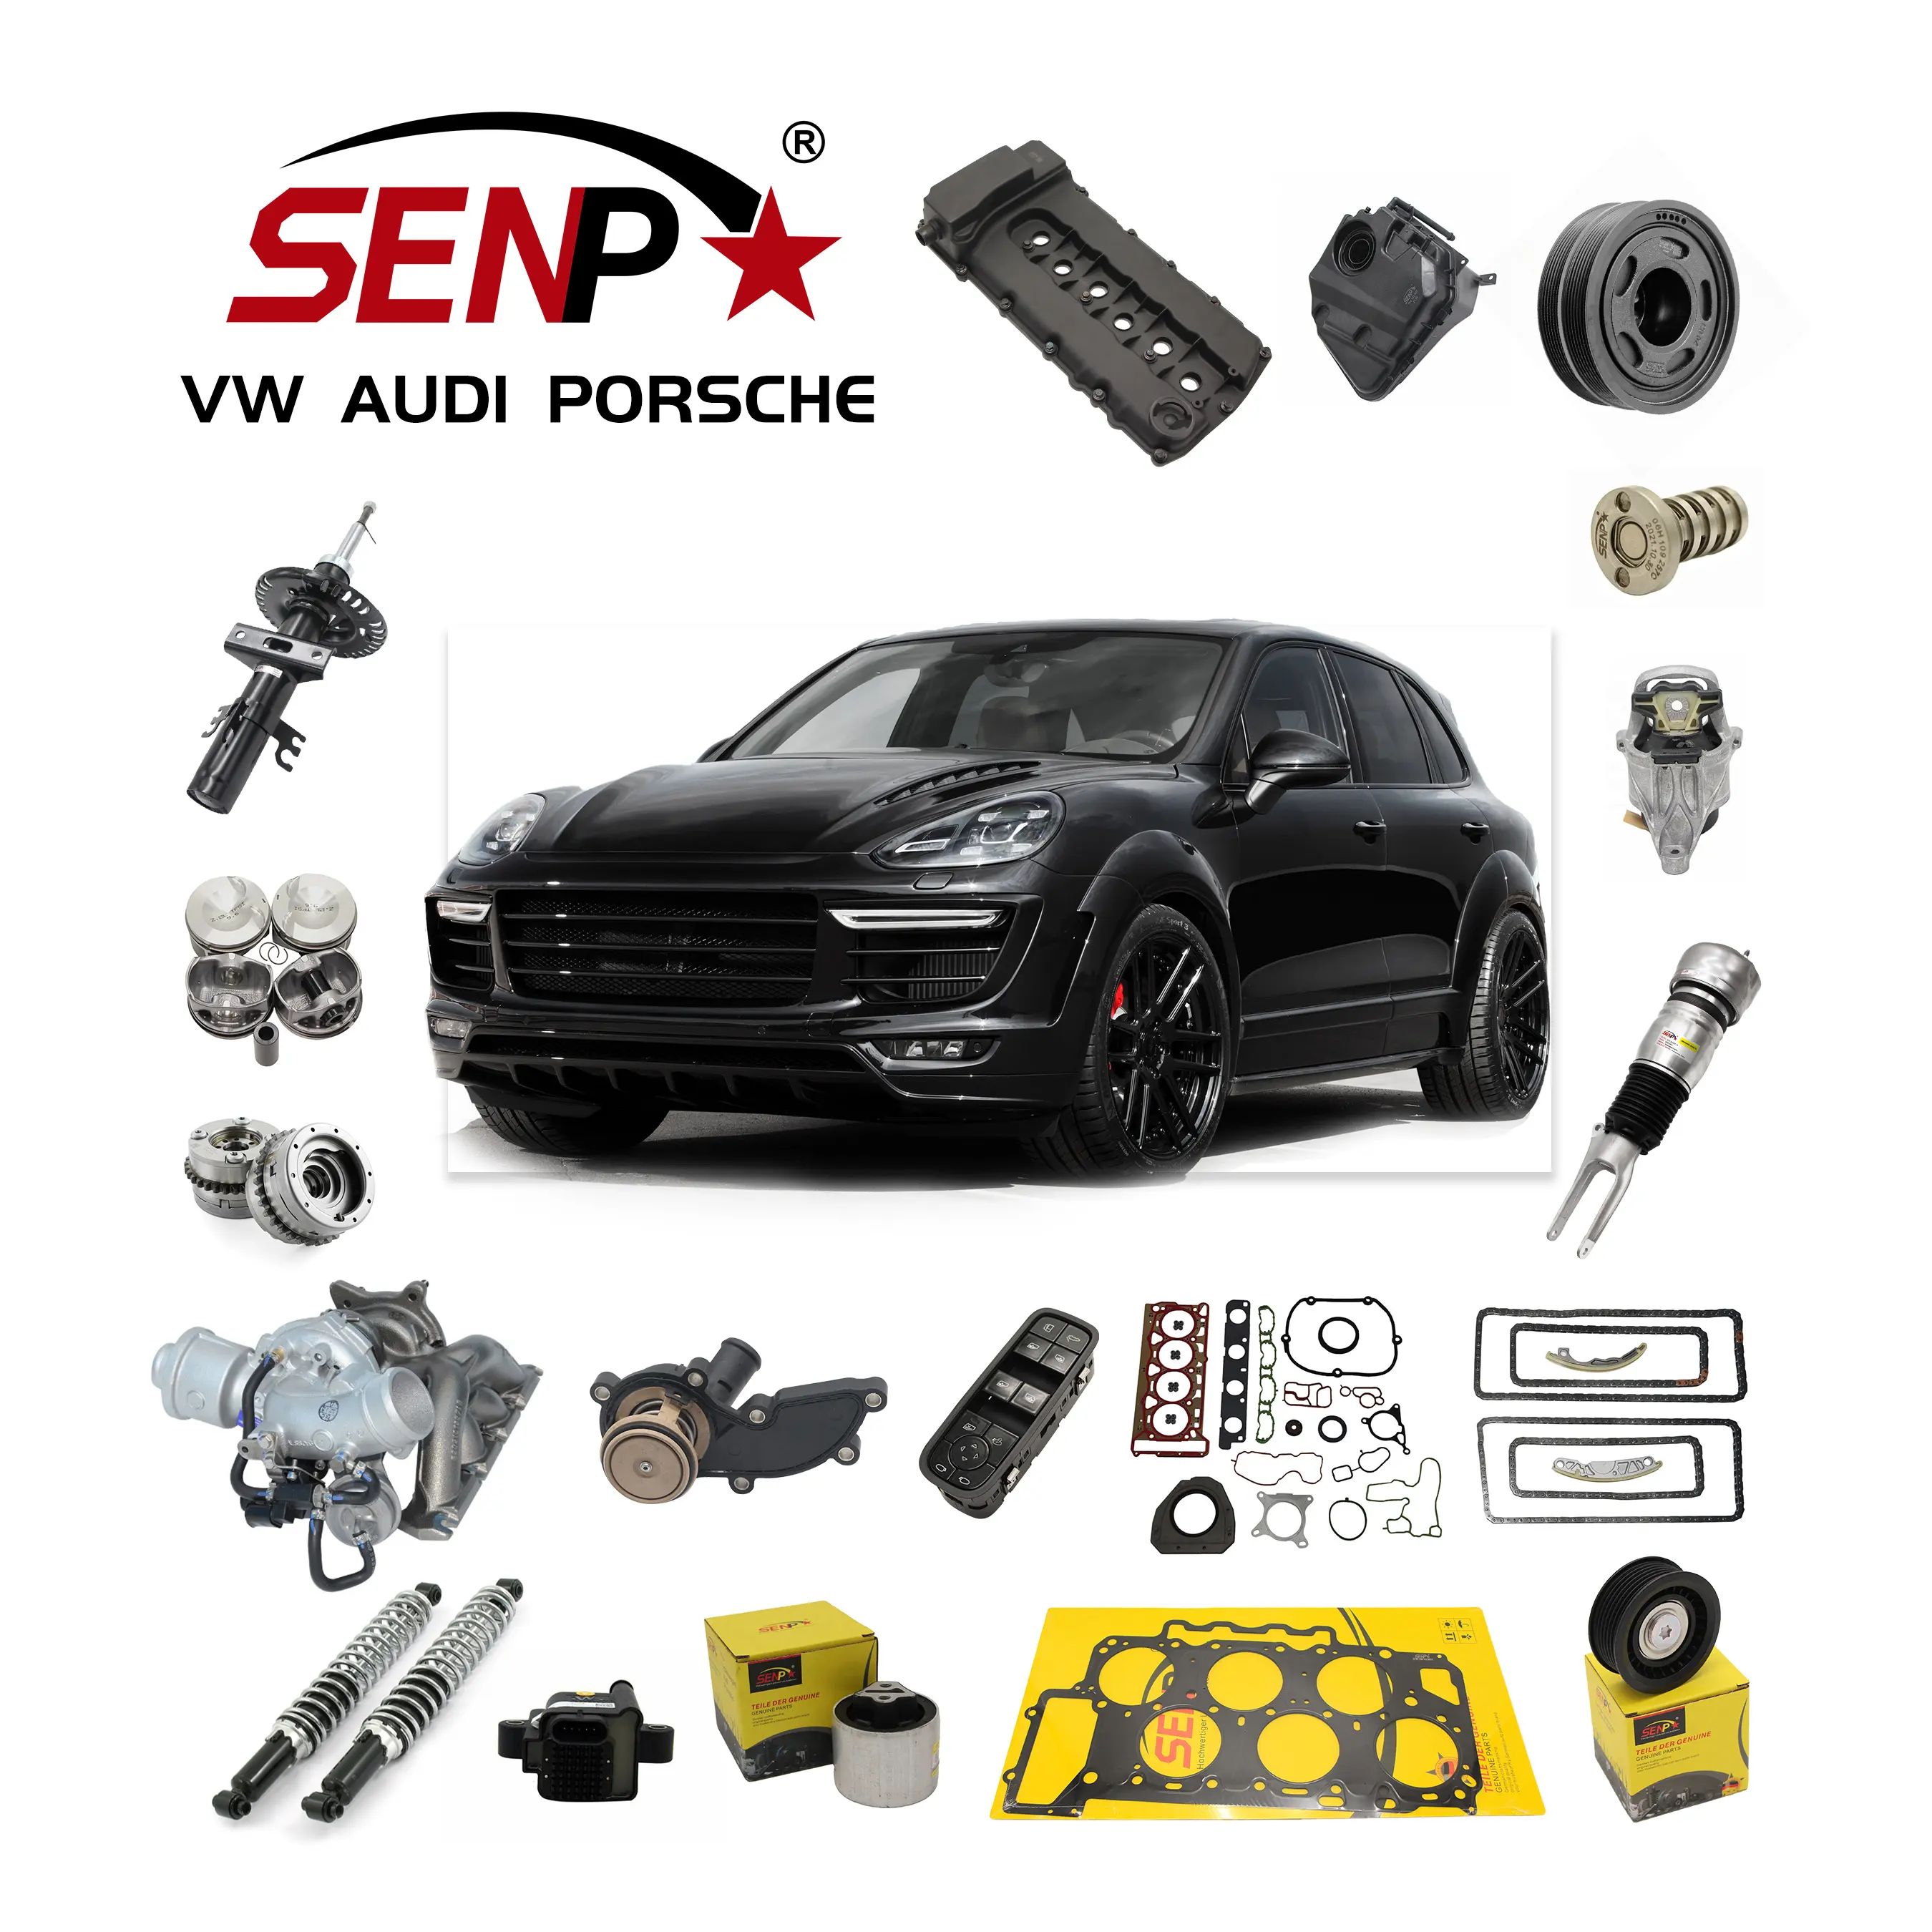 Senp Hot sale Auto spare Parts other vehicle engine Parts Car accessories for VW AUDI PORSCHE